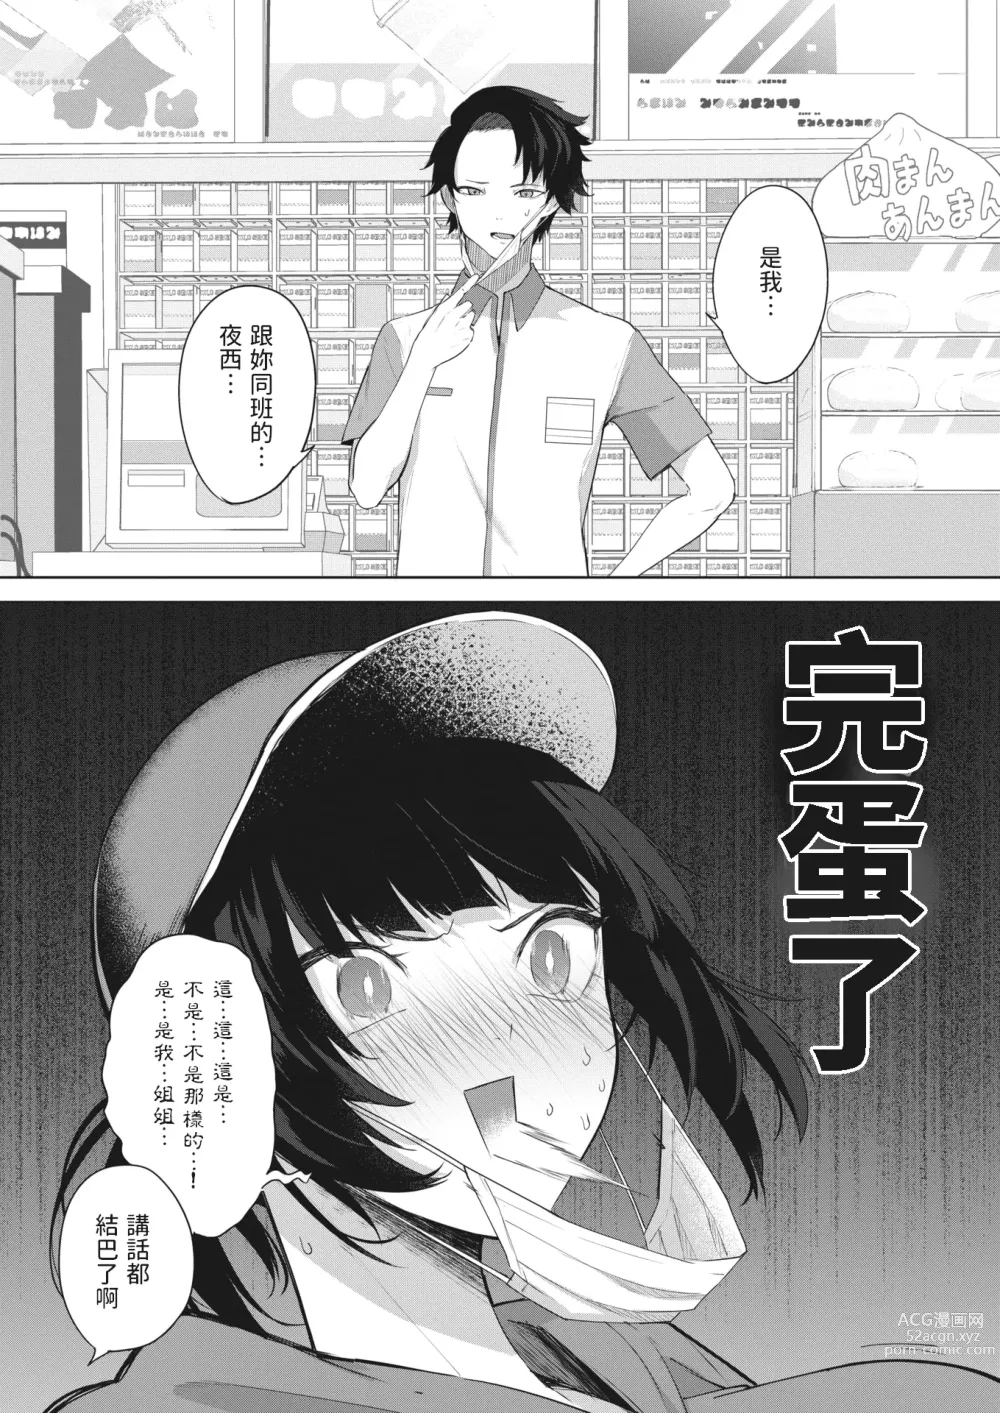 Page 4 of manga Chigai wa 0.01mm